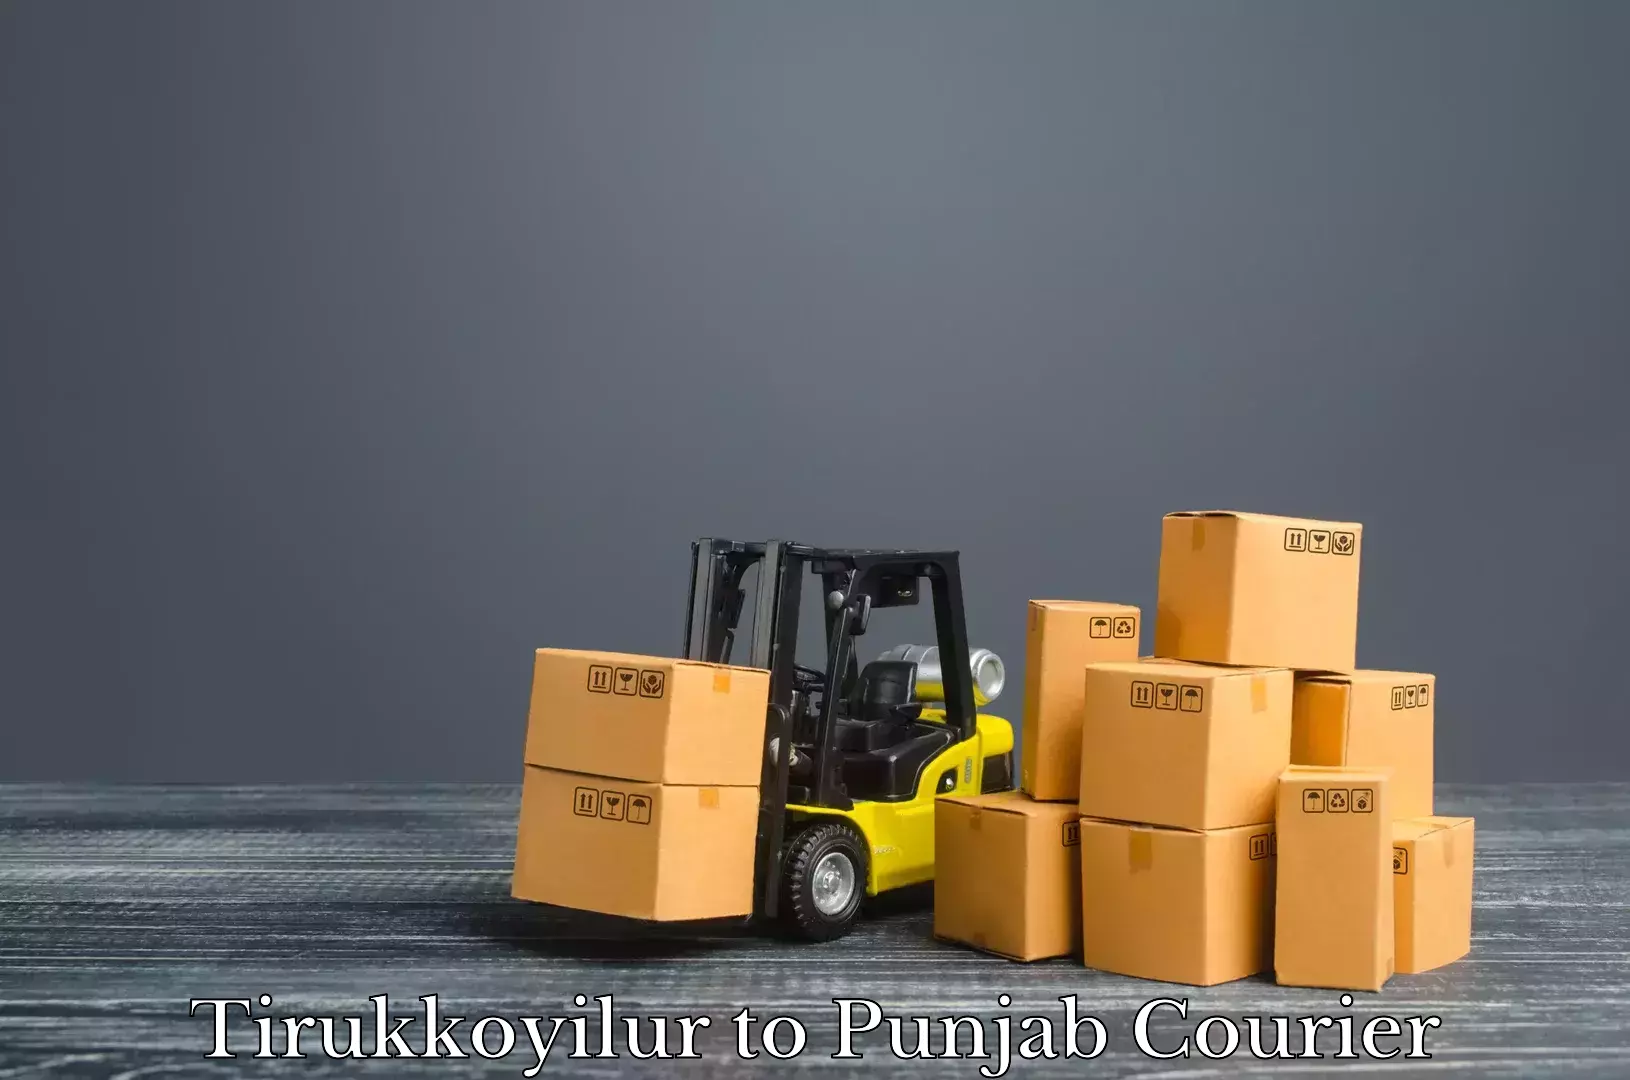 Baggage shipping experts Tirukkoyilur to Malerkotla